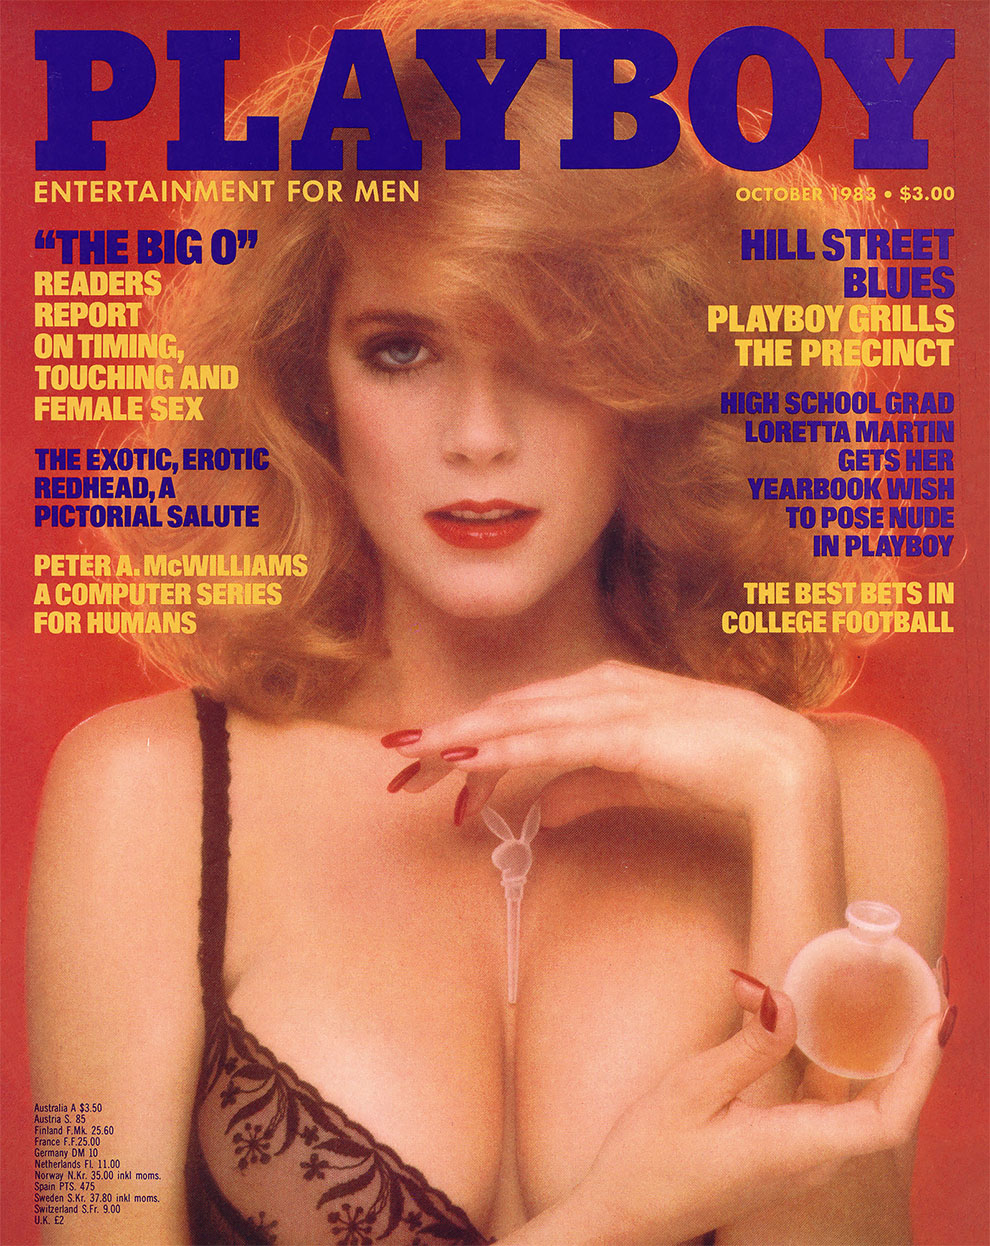 Фотографы воссоздали обложки Playboy спустя годы и вот что у них получилось